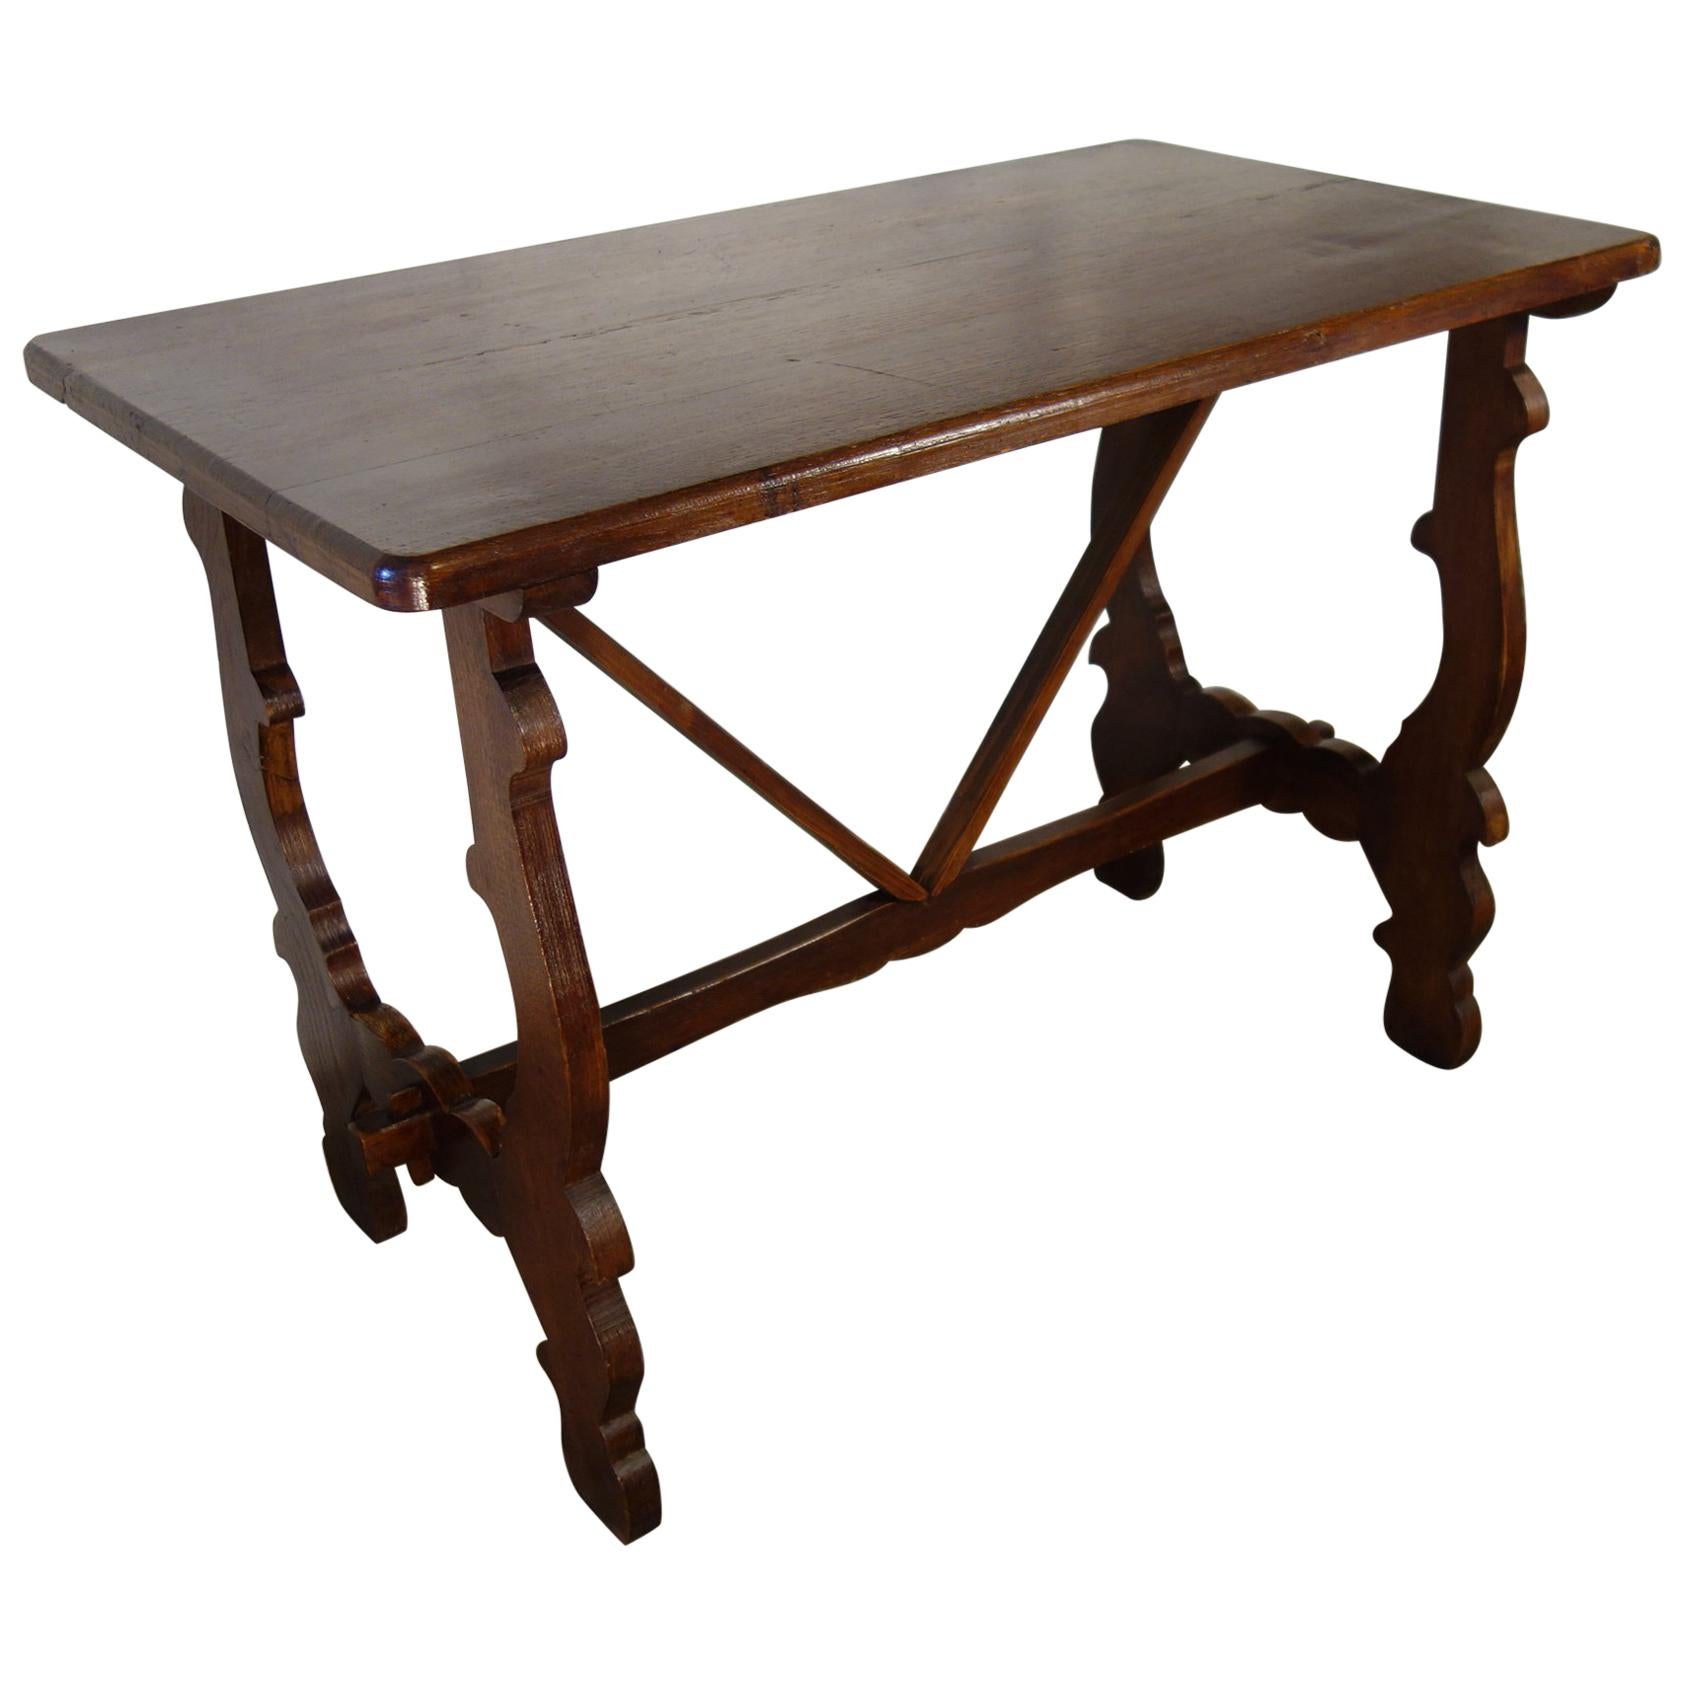 Ancienne table de ferme italienne de style réfectoire de la Renaissance en chêne, fabriquée à la main